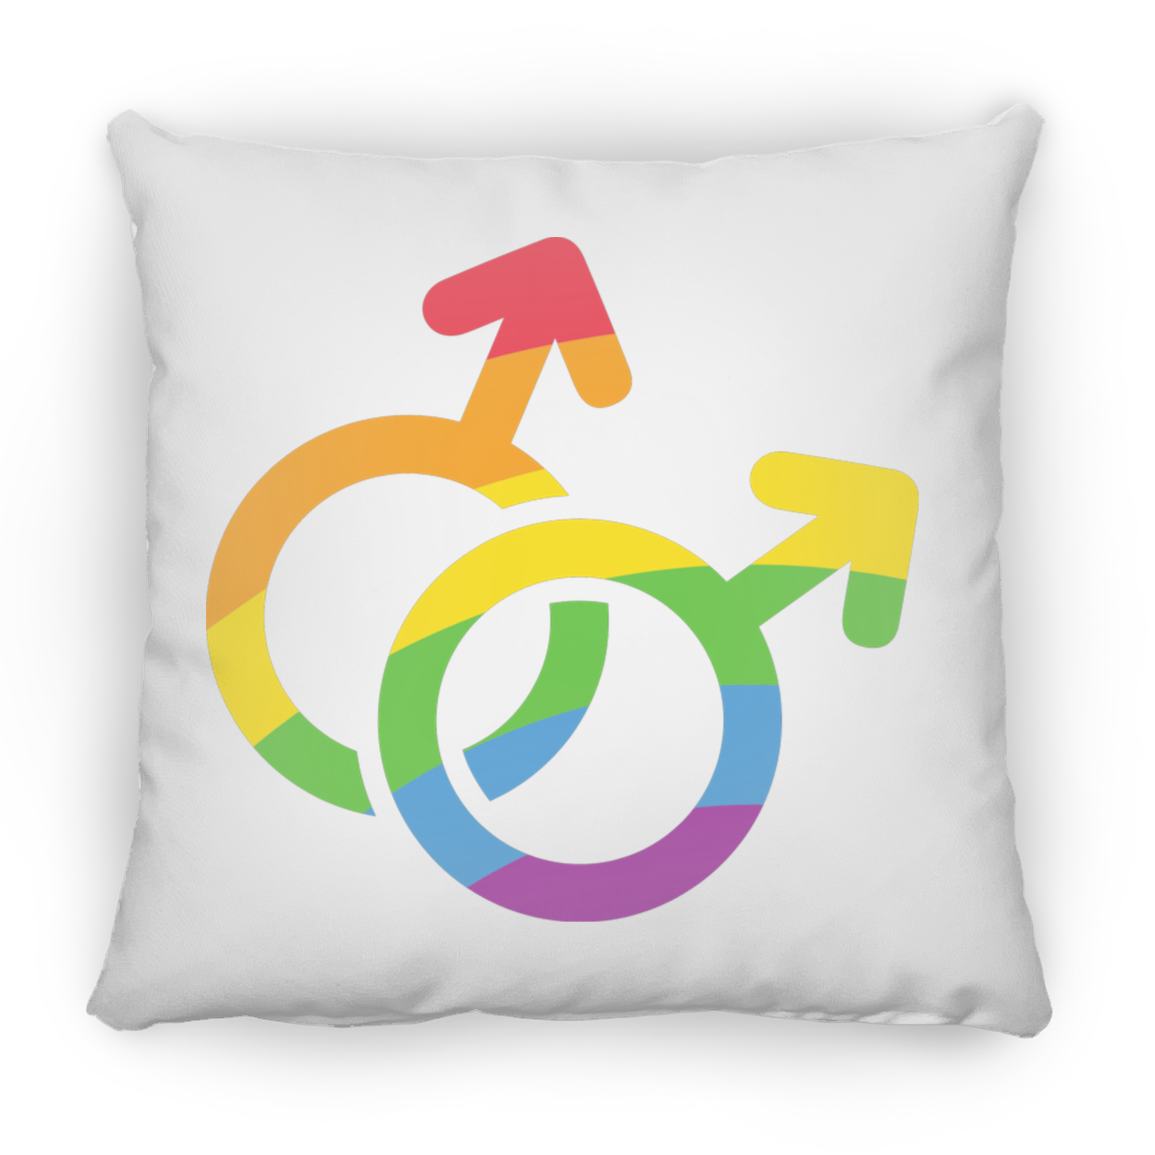 Male Pride Square Pillow